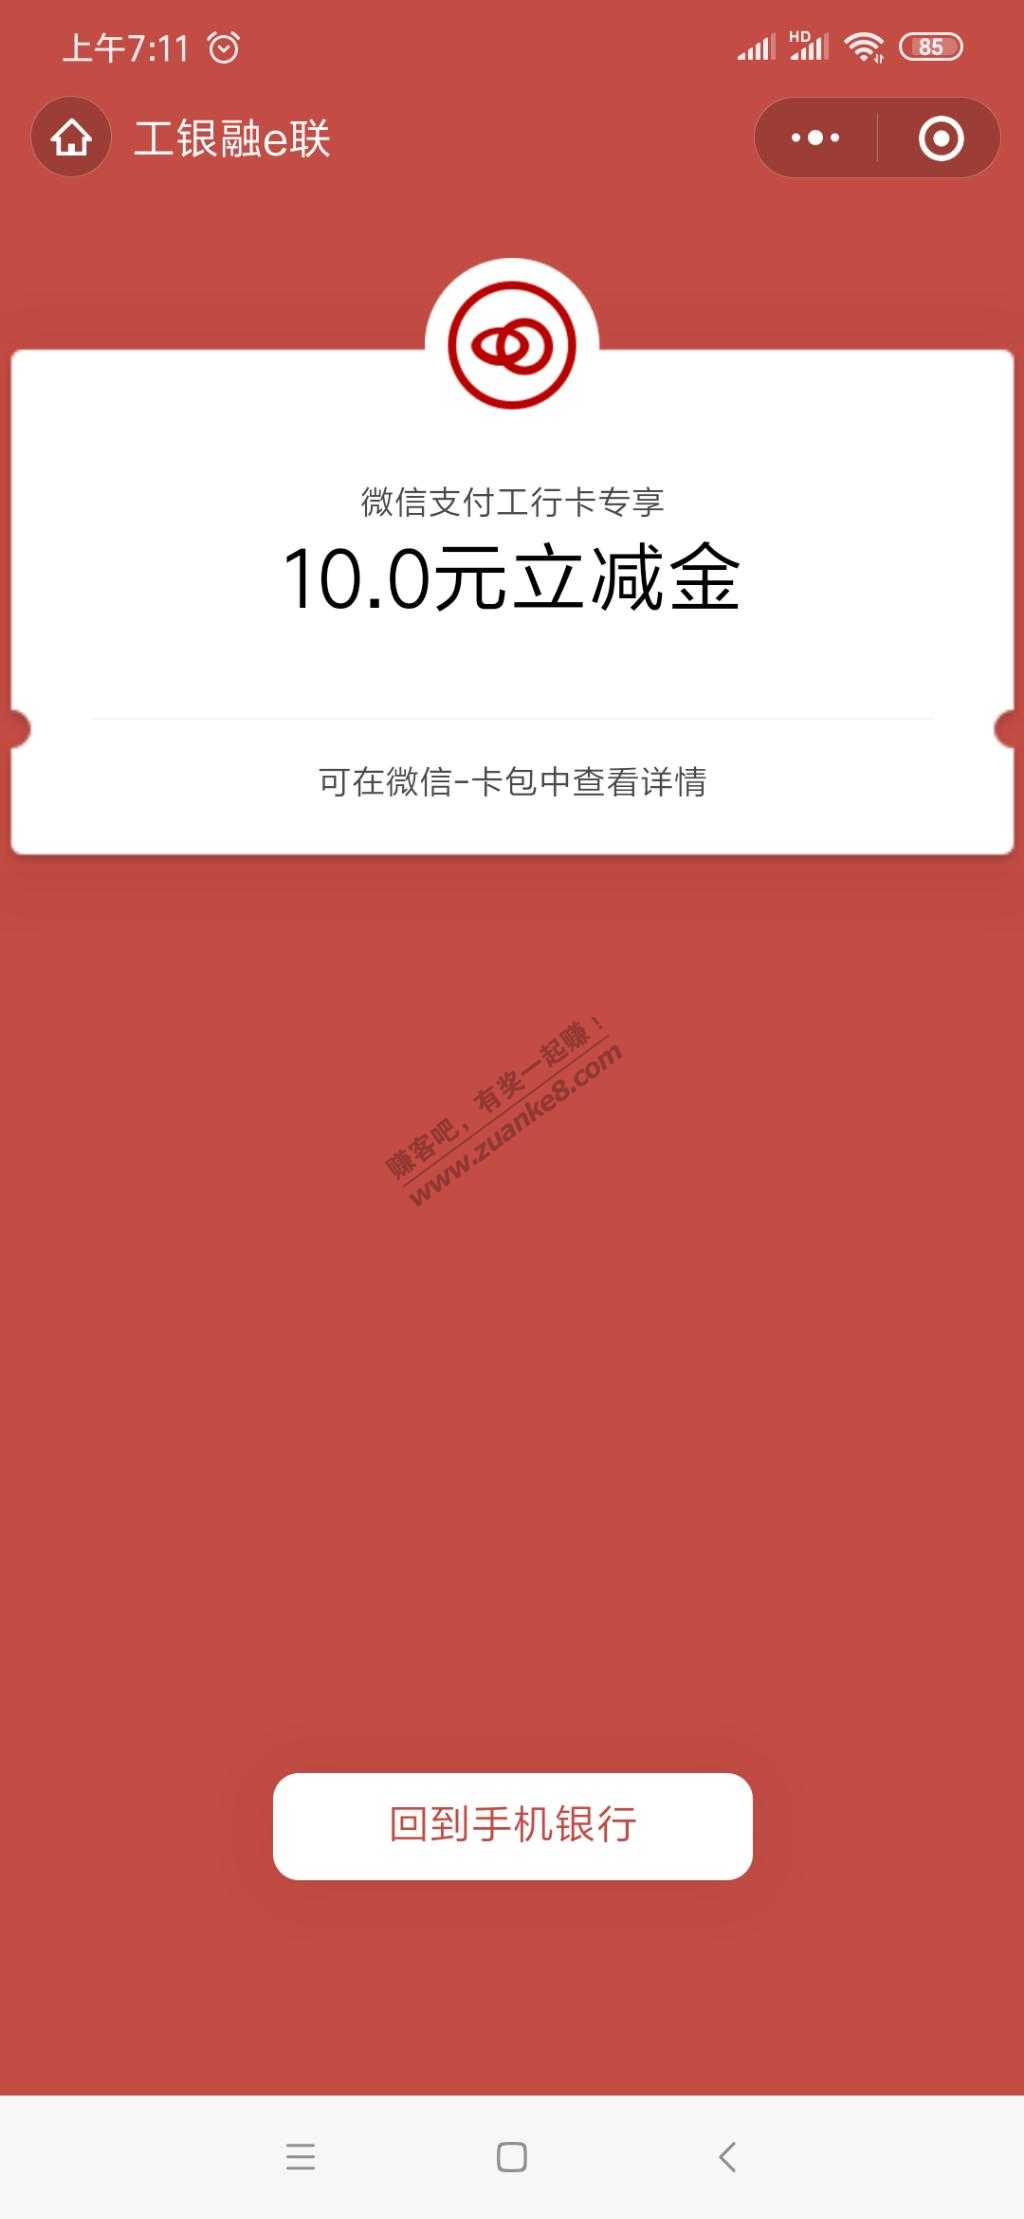 工商银行10V.x立减金-惠小助(52huixz.com)